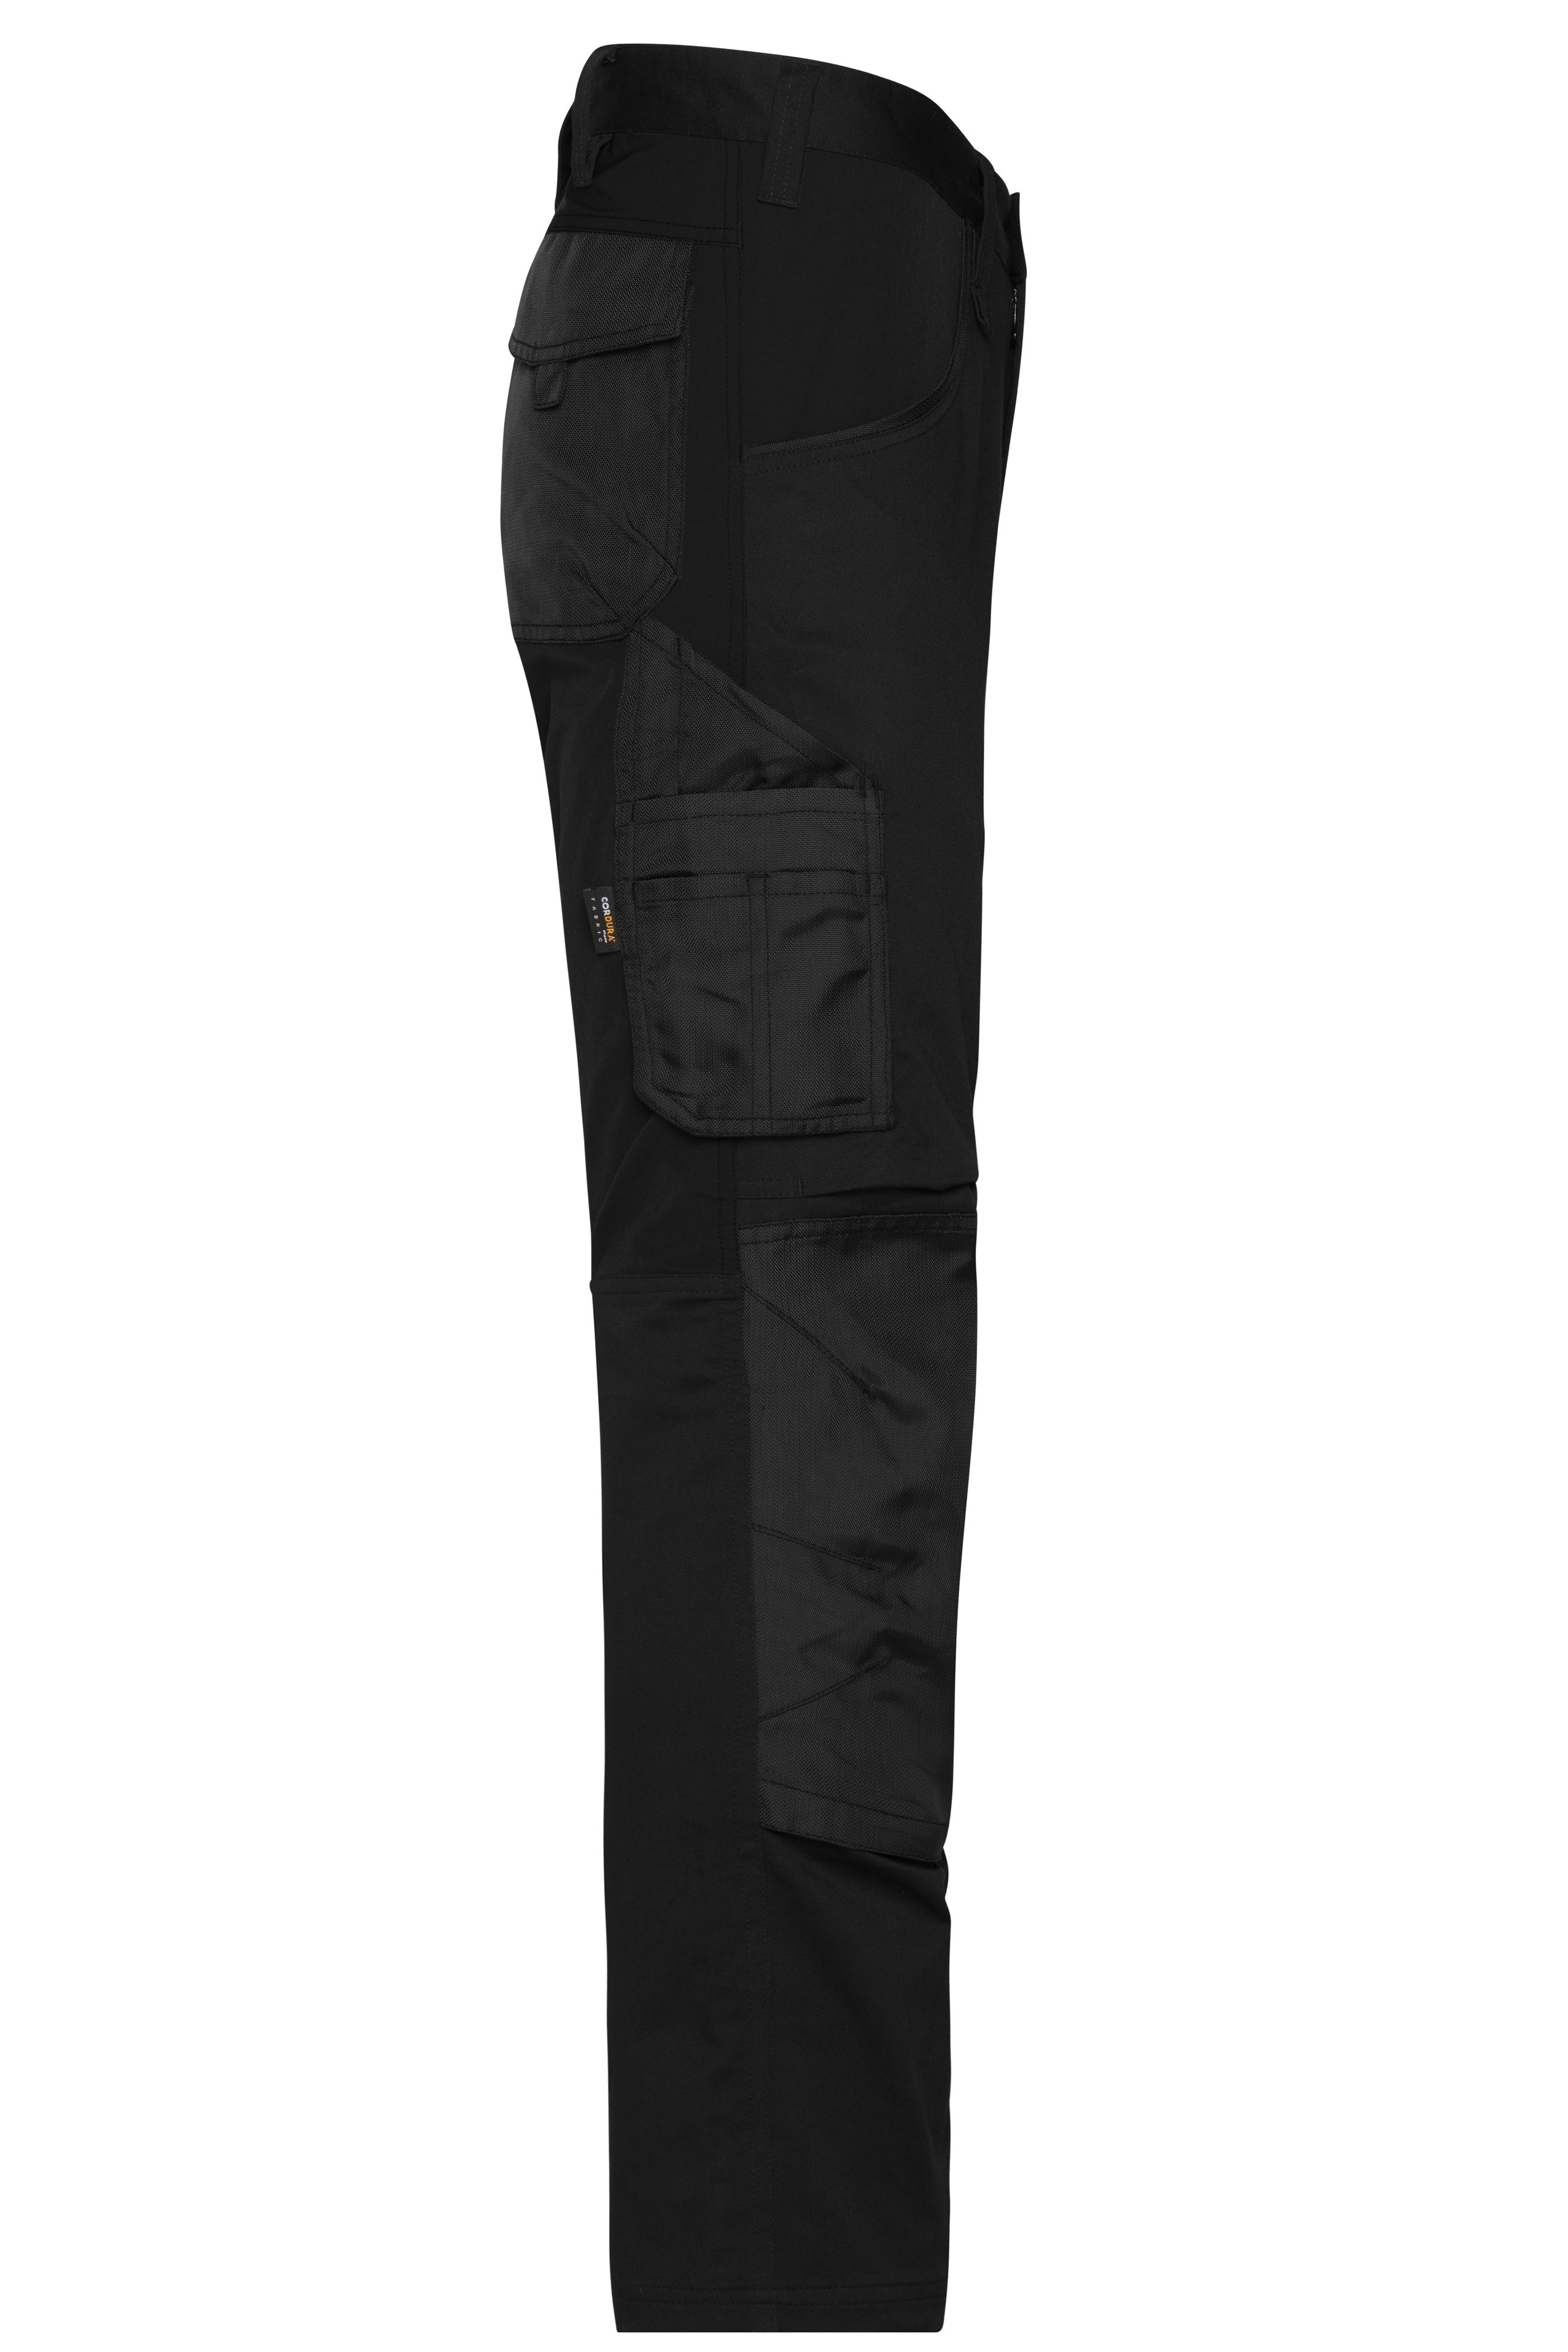 Workwear Stretch-Pants Slim Line JN1812 Spezialisierte Arbeitshose in schmaler Schnittführung mit elastischen Einsätzen und funktionellen Details